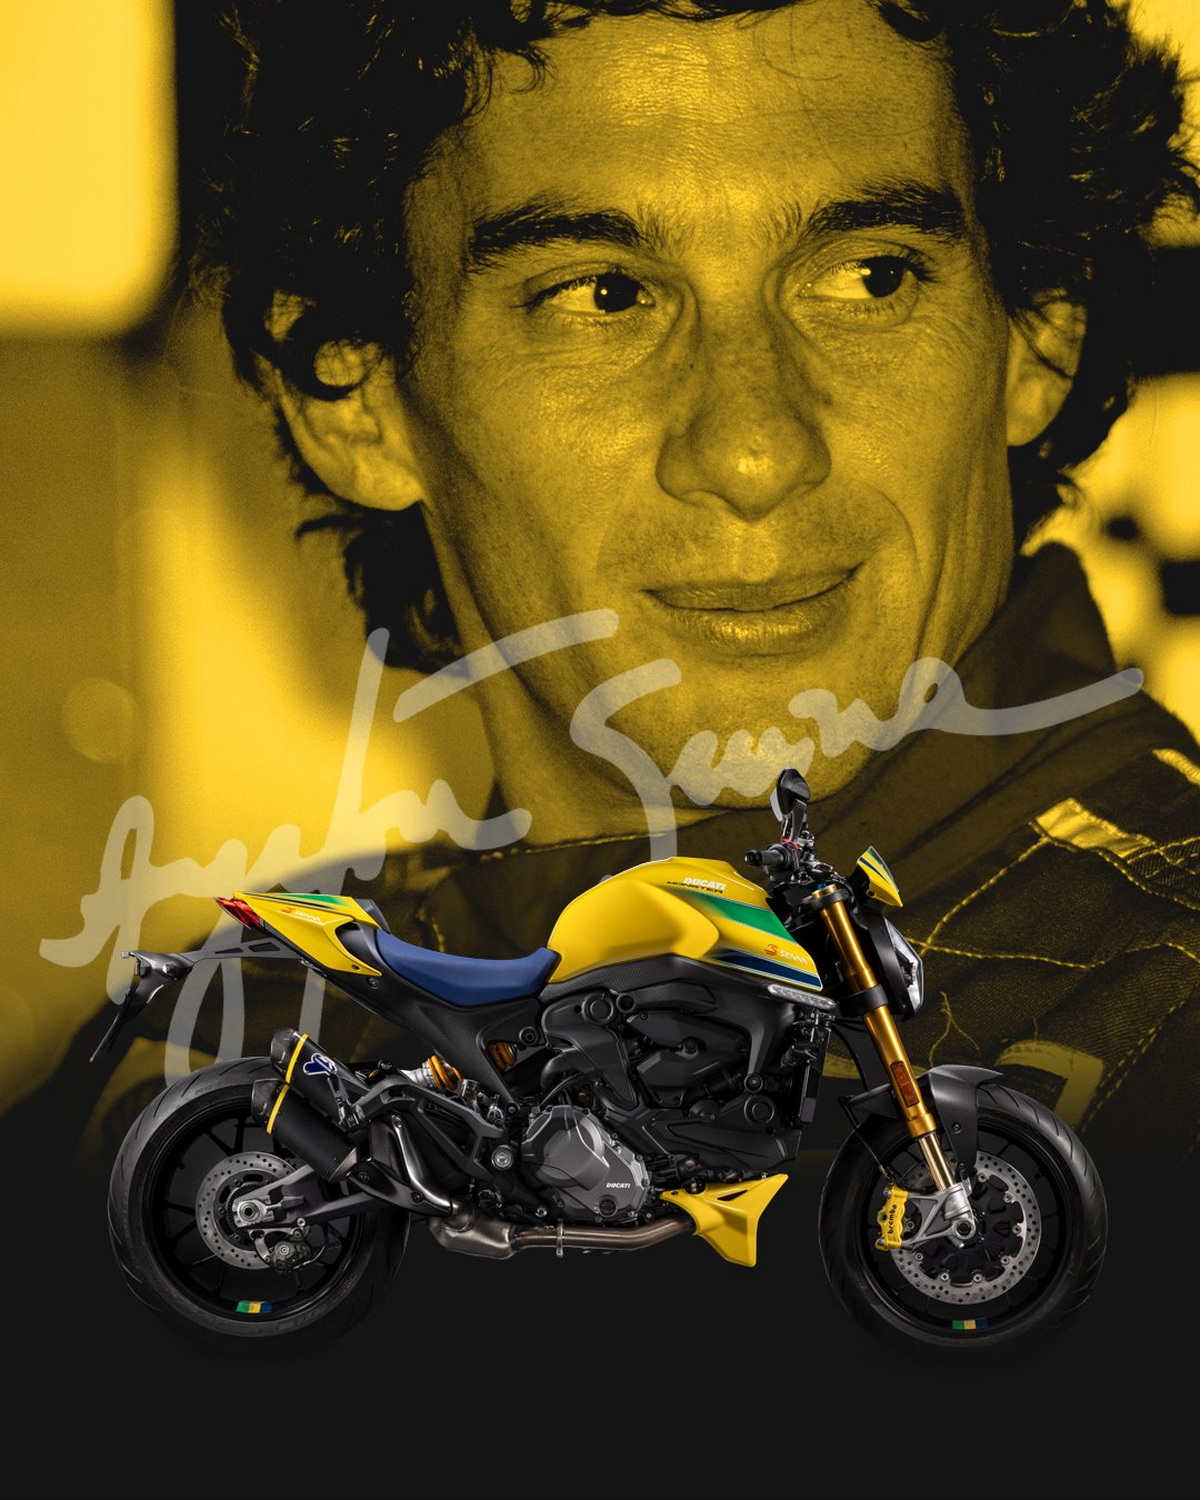 Ducati Monster Senna Edition